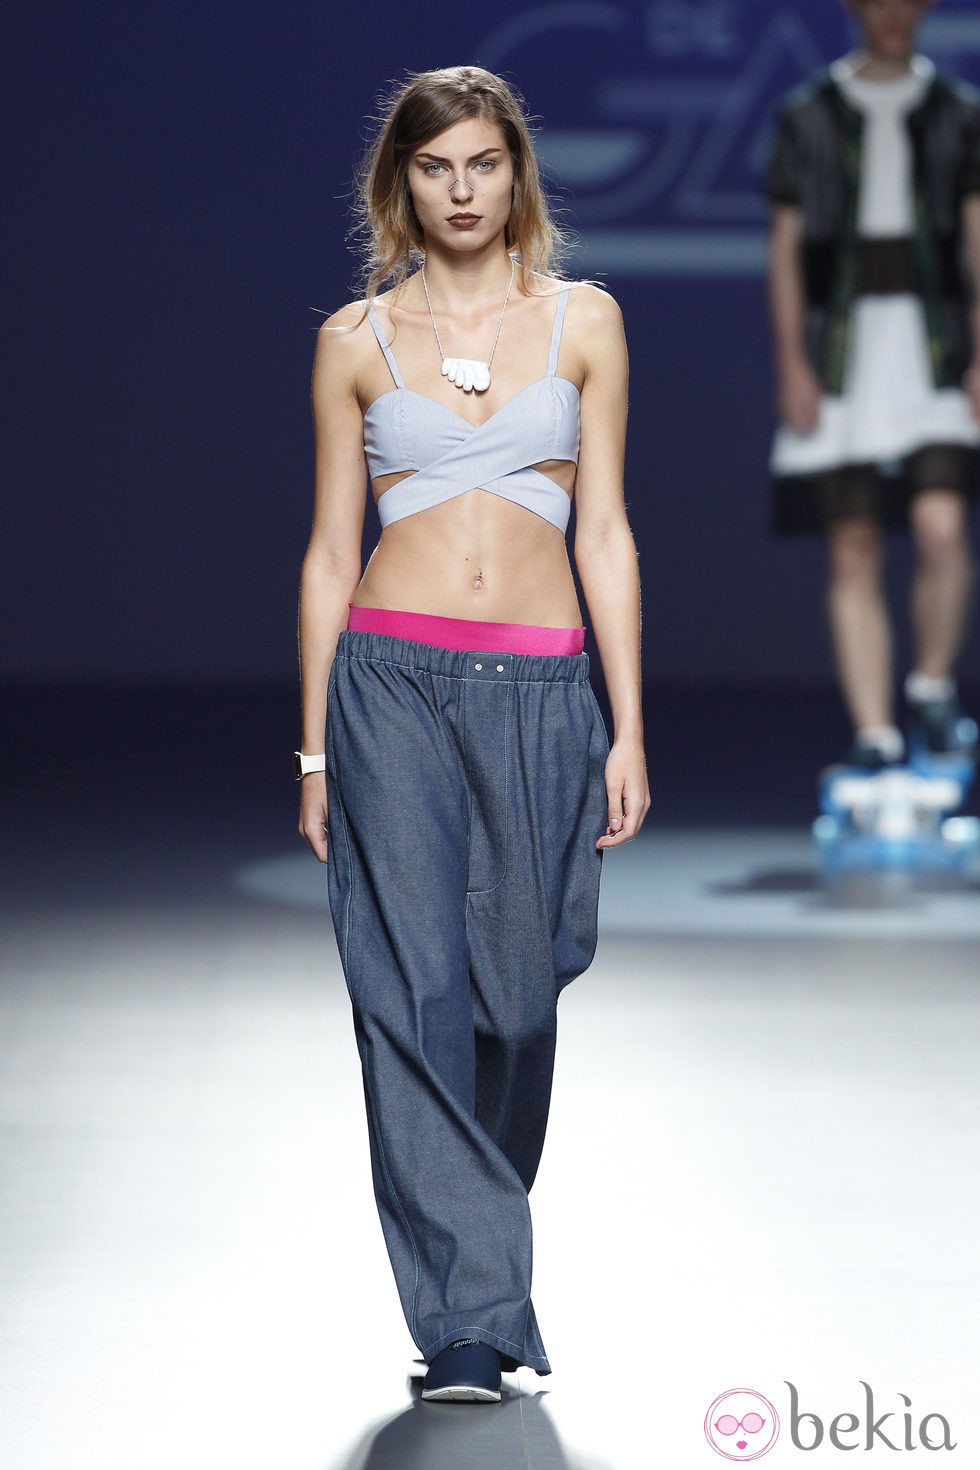 Pantalón sport de la colección primavera/verano 2014 de Heridadegato en el EGO Madrid Fashion Week